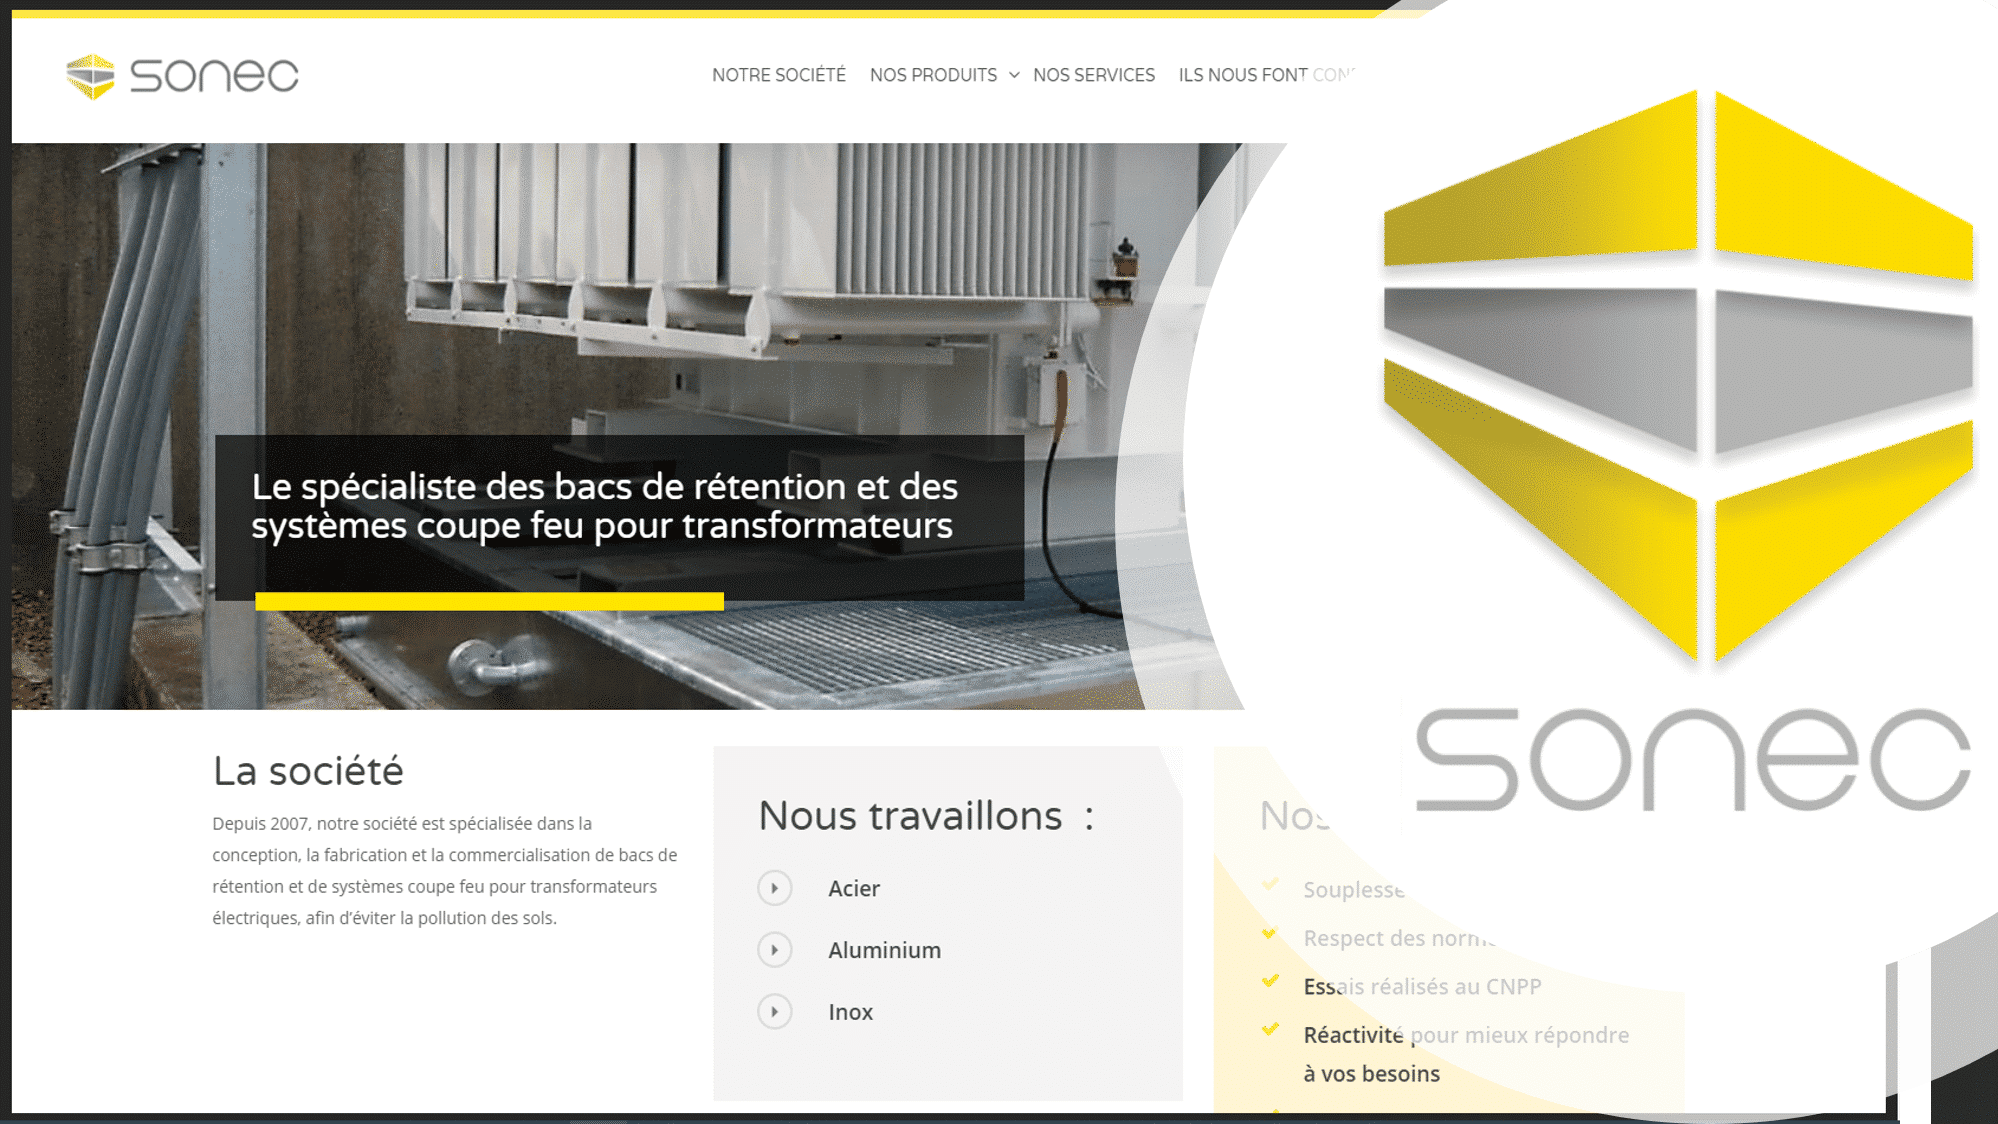 SONEC est une société est spécialisée dans la conception, la fabrication et la commercialisation de bacs de rétention et de systèmes coupe-feu pour transformateurs électriques